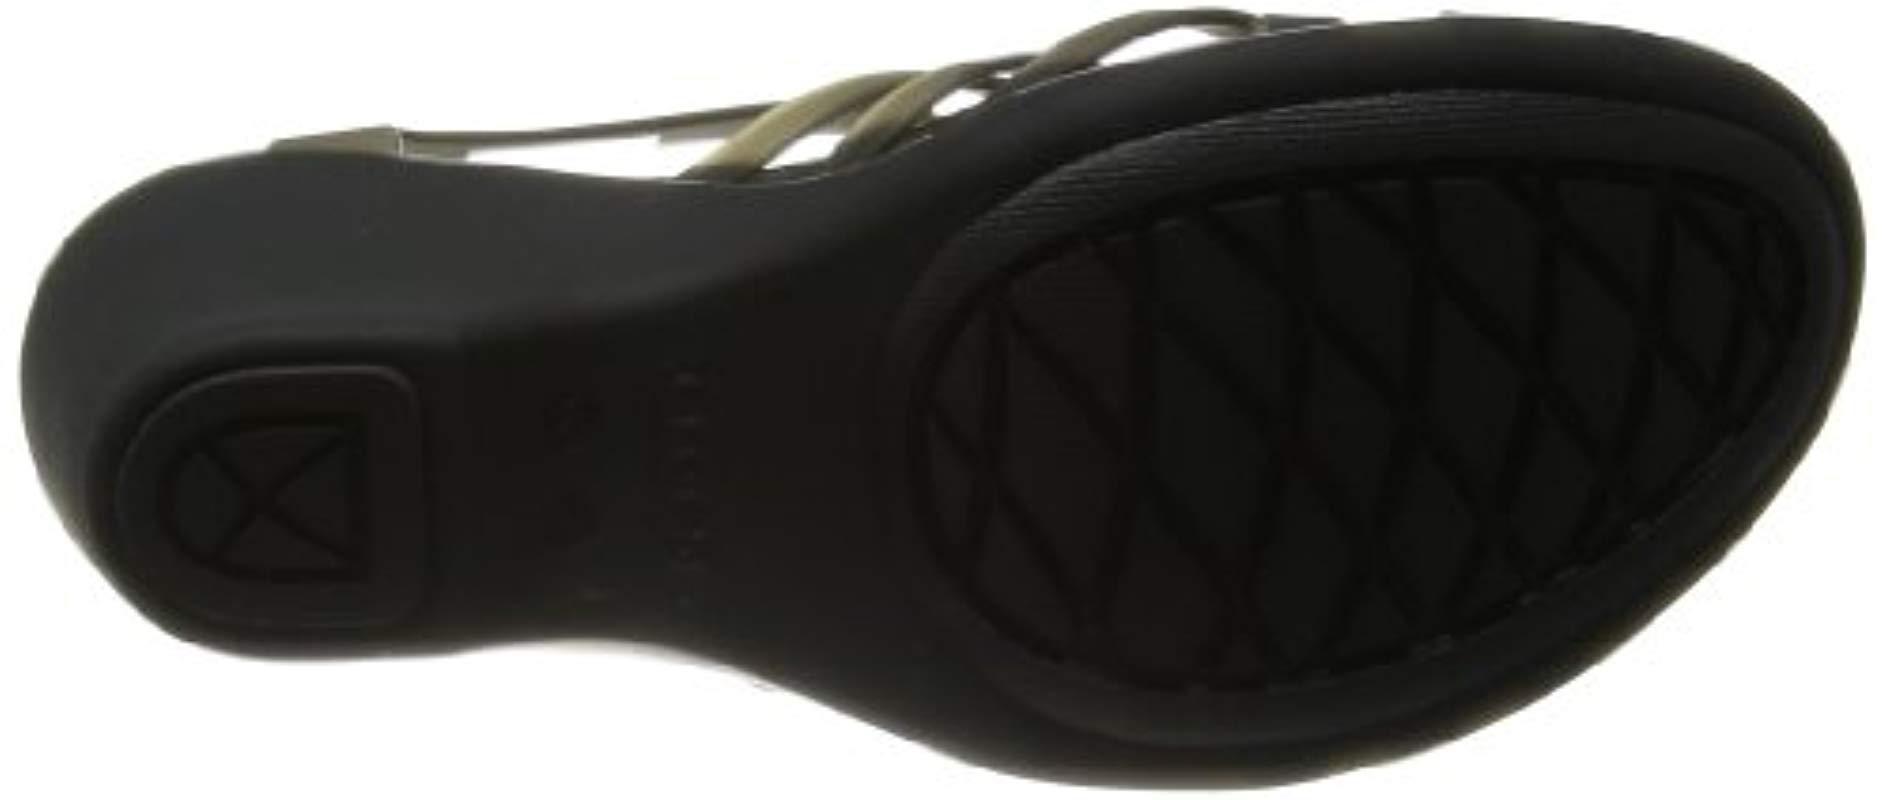 Crocs™ Huarache Wedge in Black/Black (Black) | Lyst